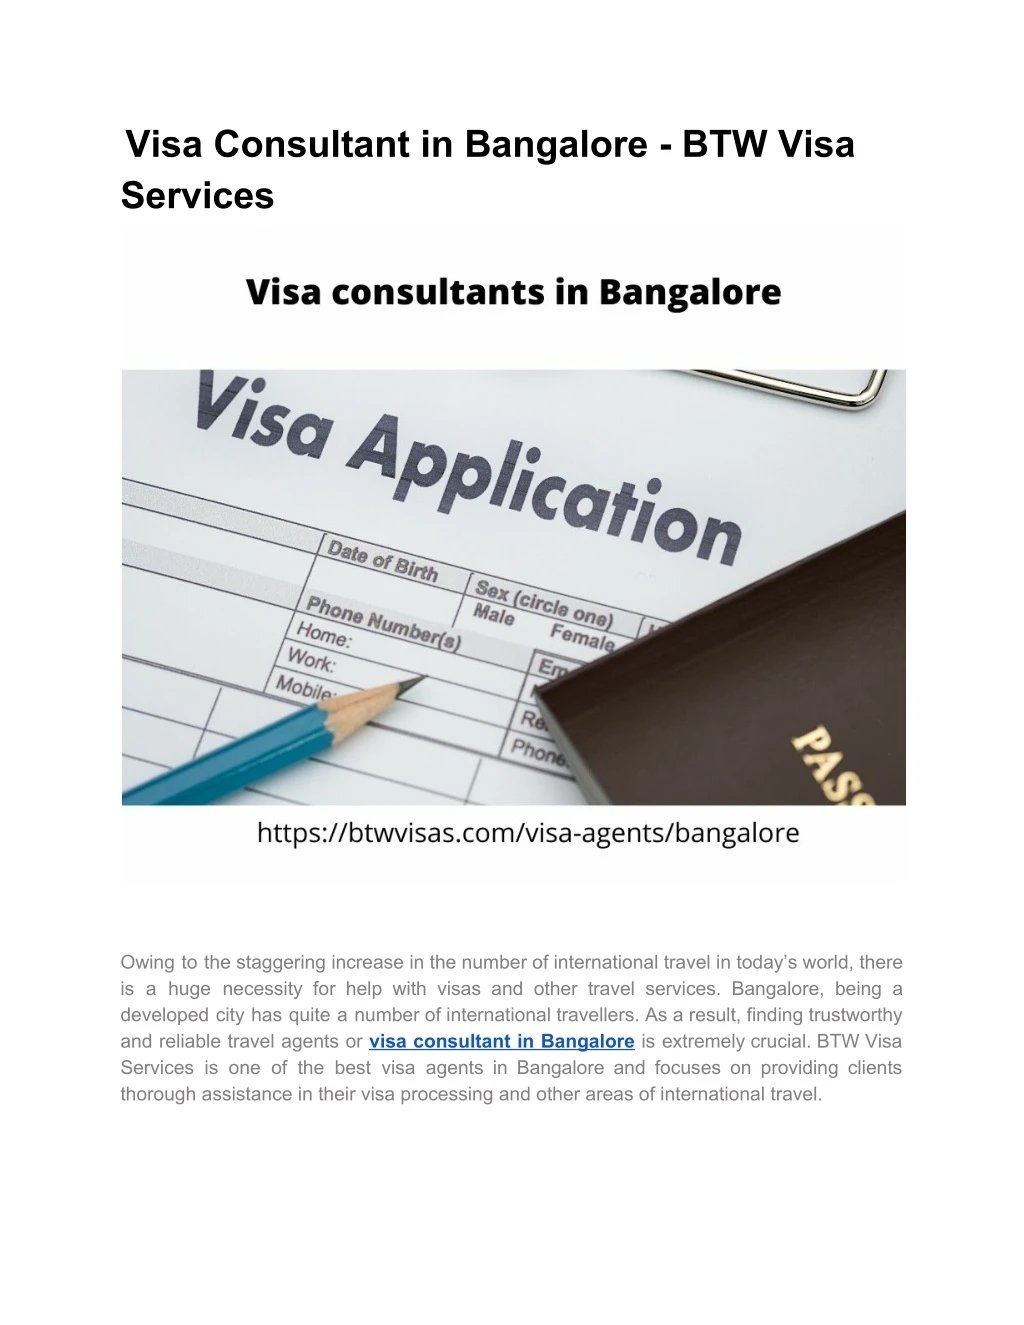 visa consultant in bangalore btw visa services